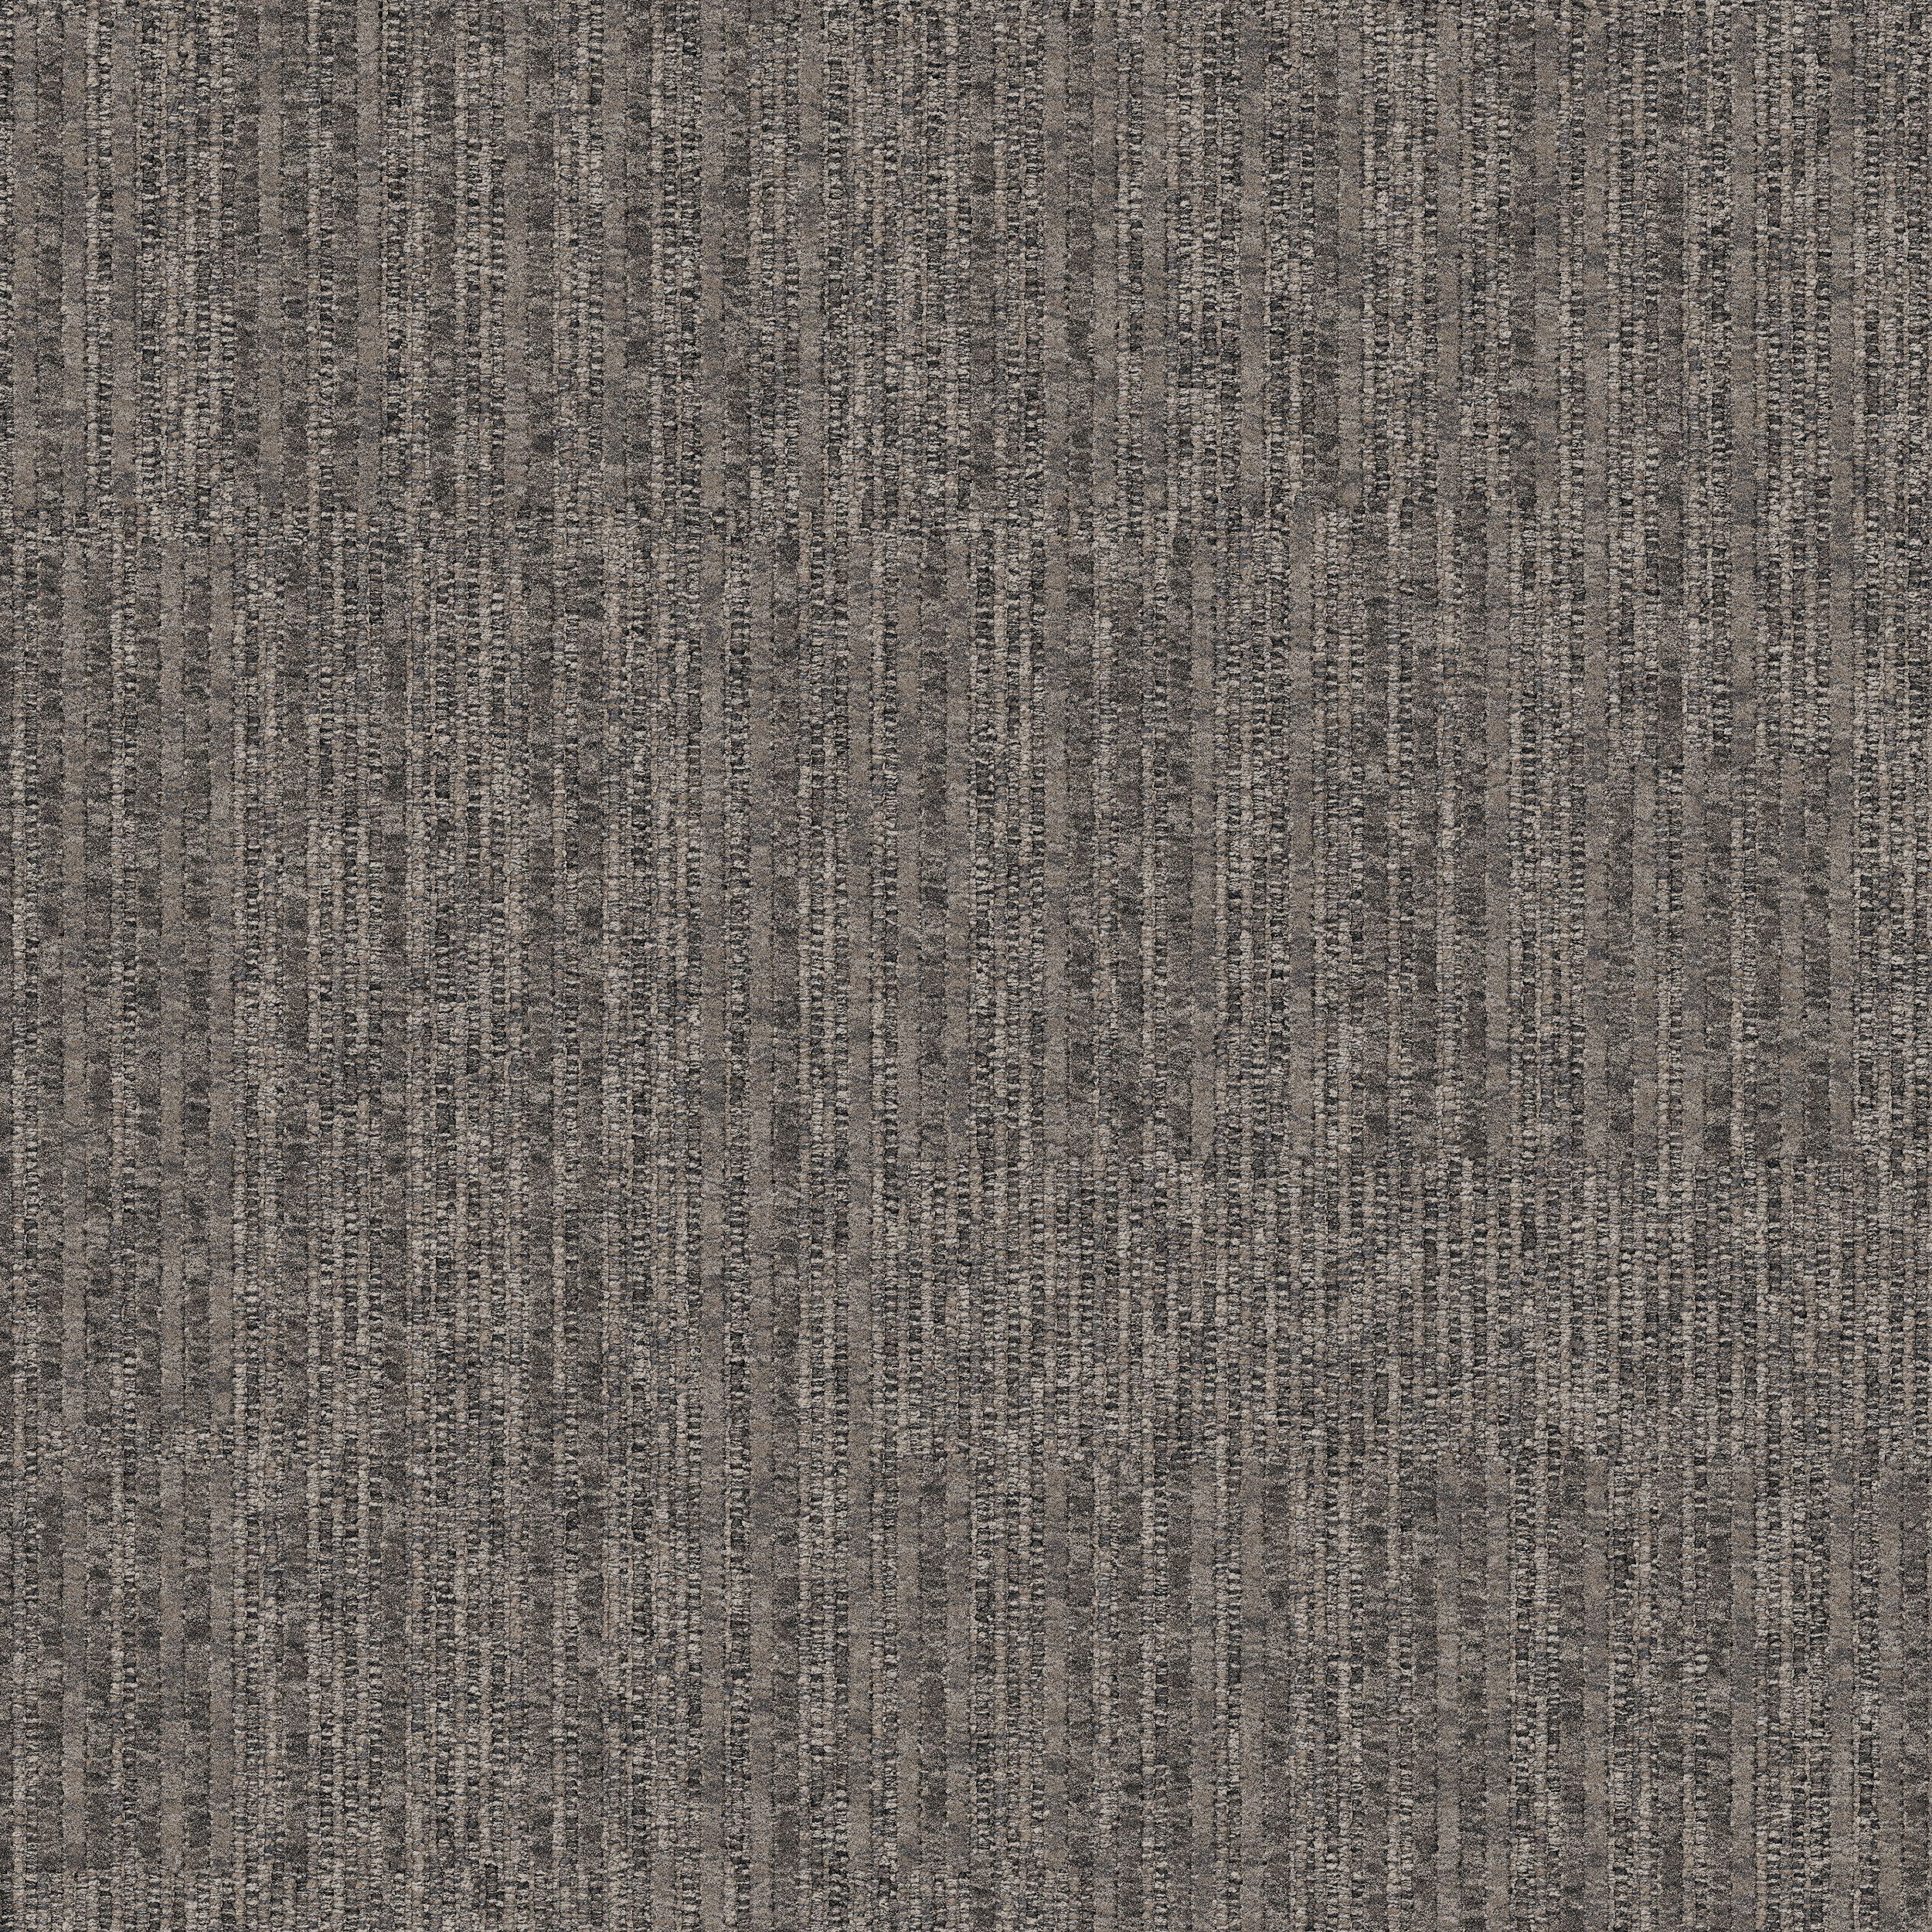 Equilibrium Carpet Tile In Persistence número de imagen 7